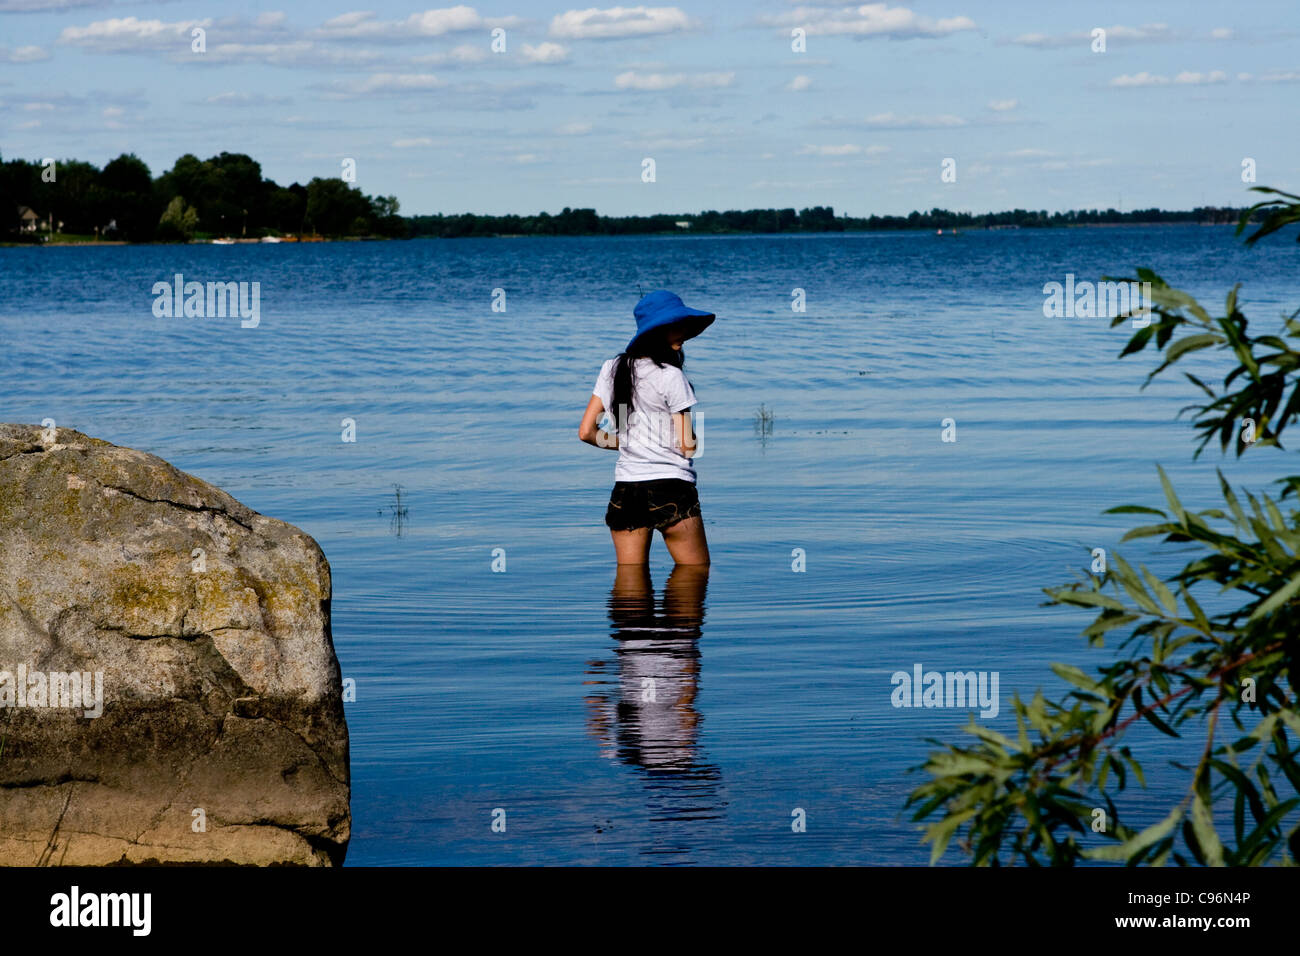 Woman fishing in the lake. Stock Photo